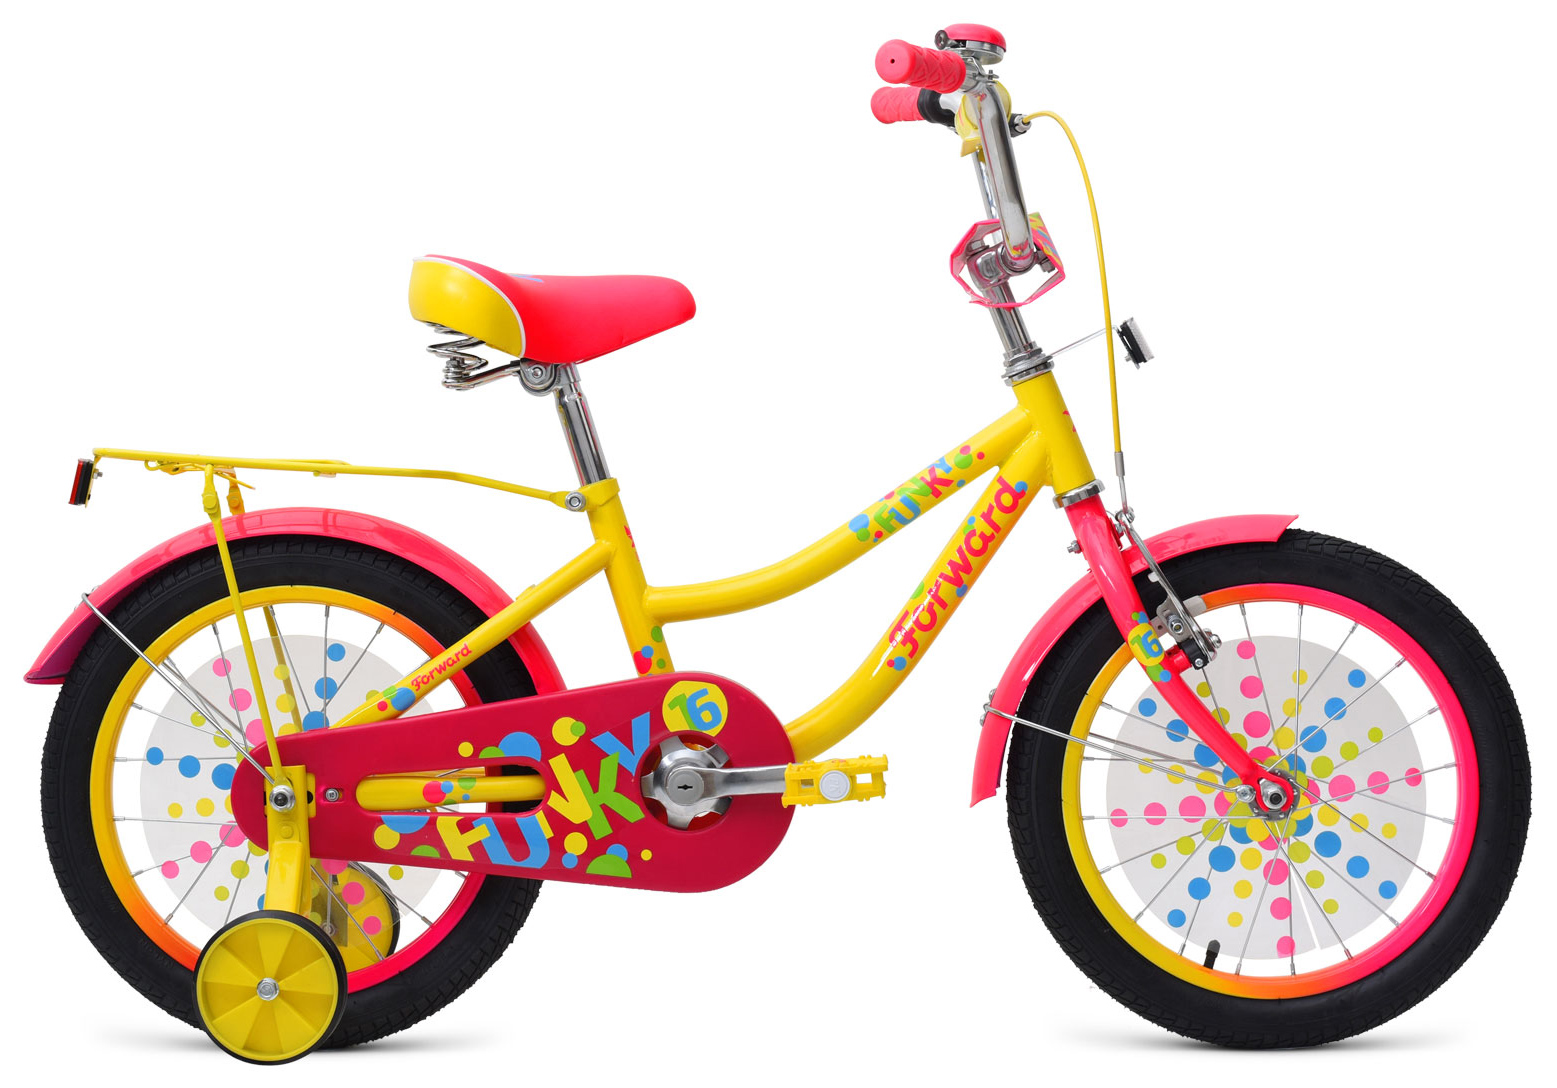  Отзывы о Трехколесный детский велосипед Forward Funky 16 2019